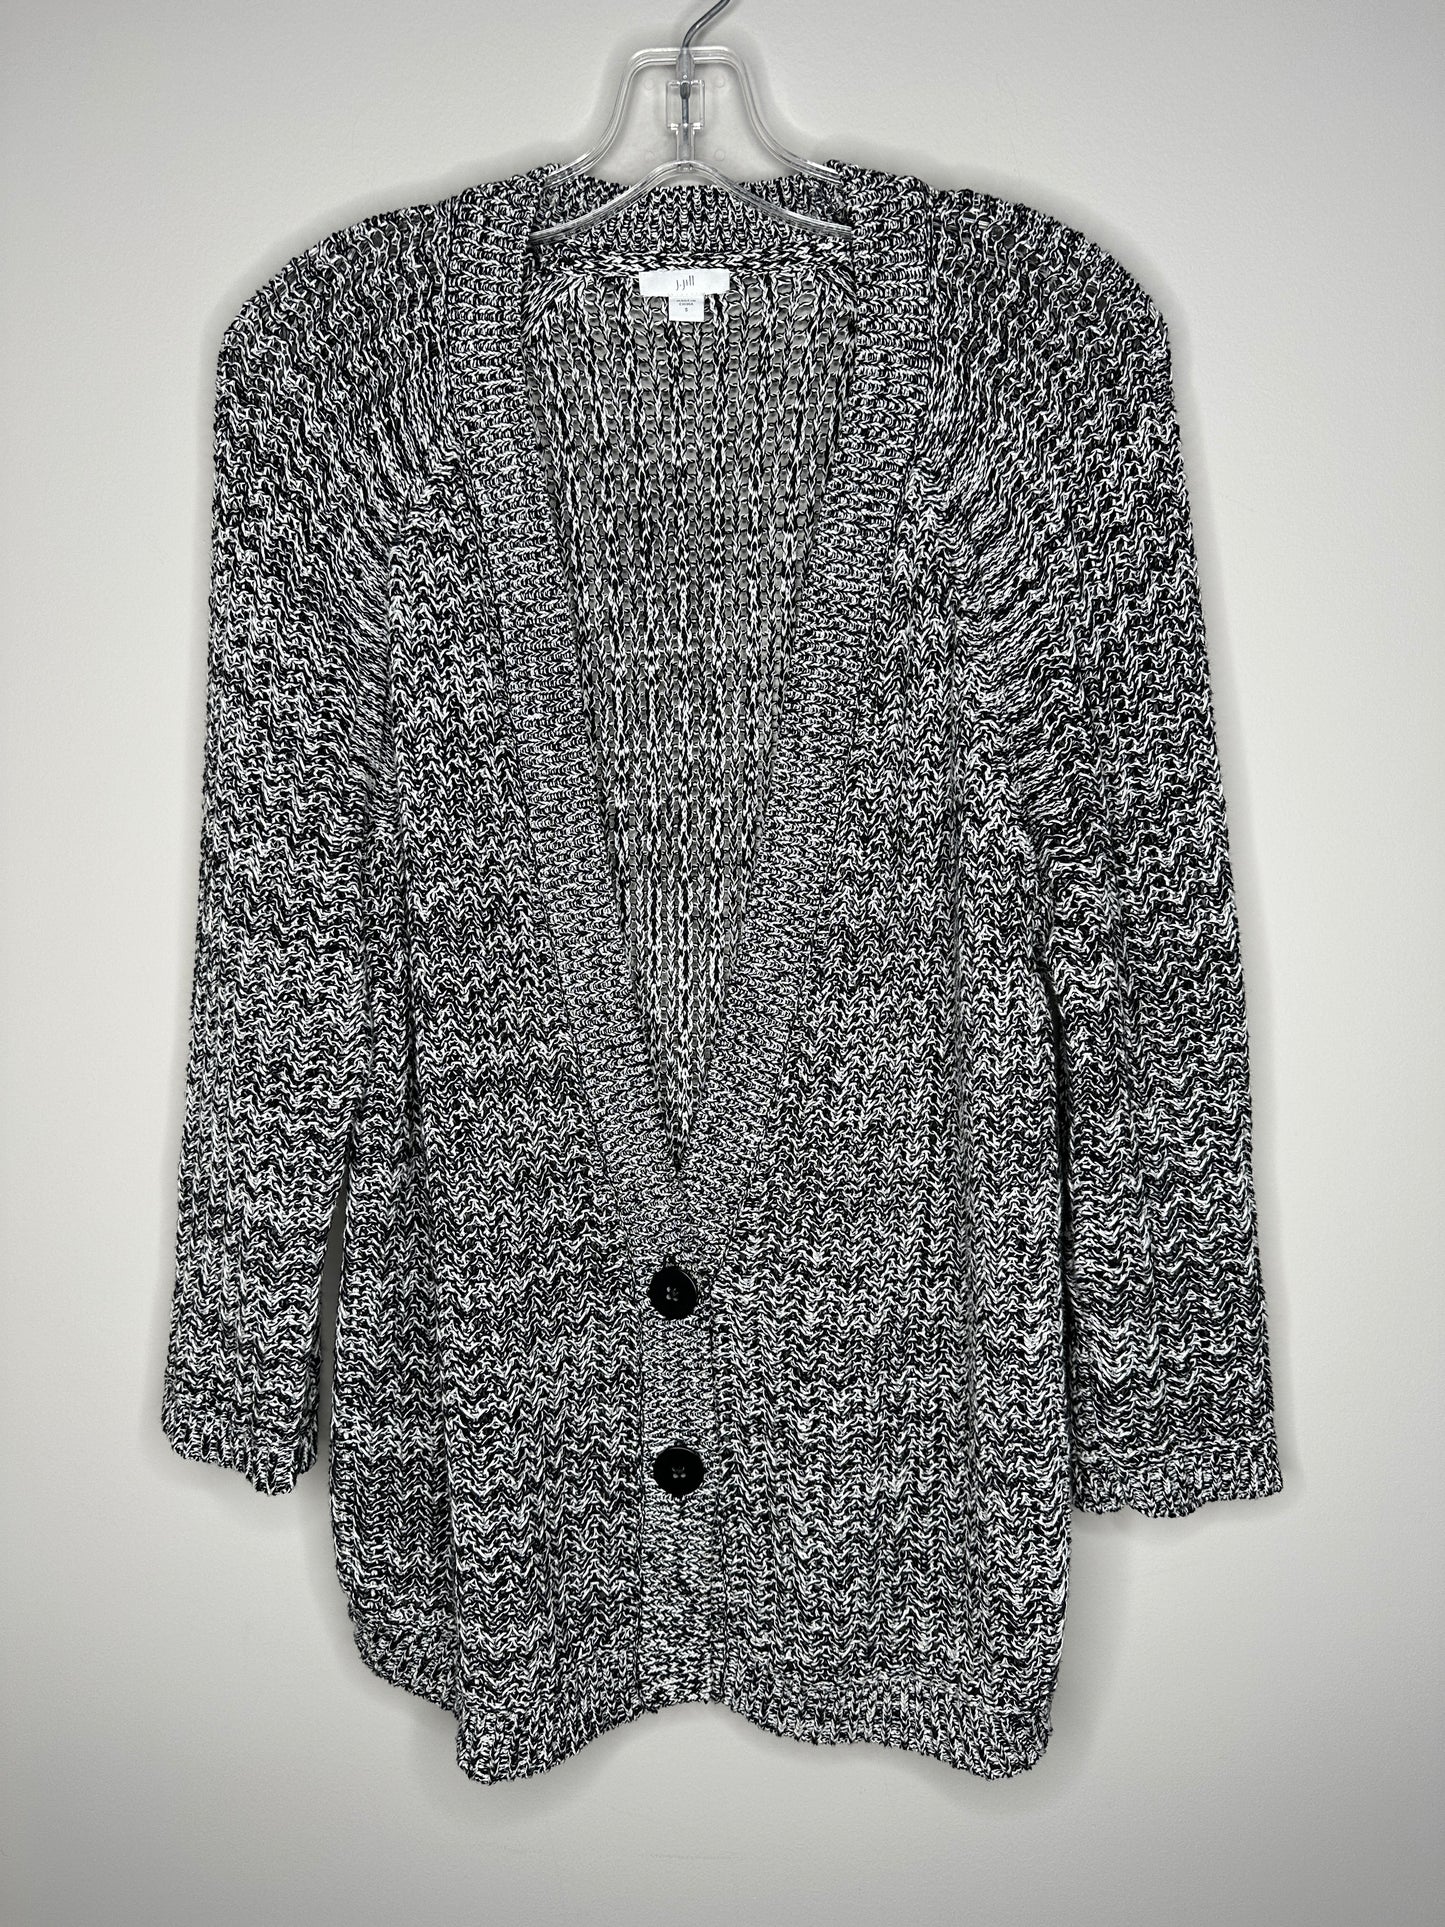 J.Jill Size S Black & White V-Neck Cardigan Sweater (runs large)